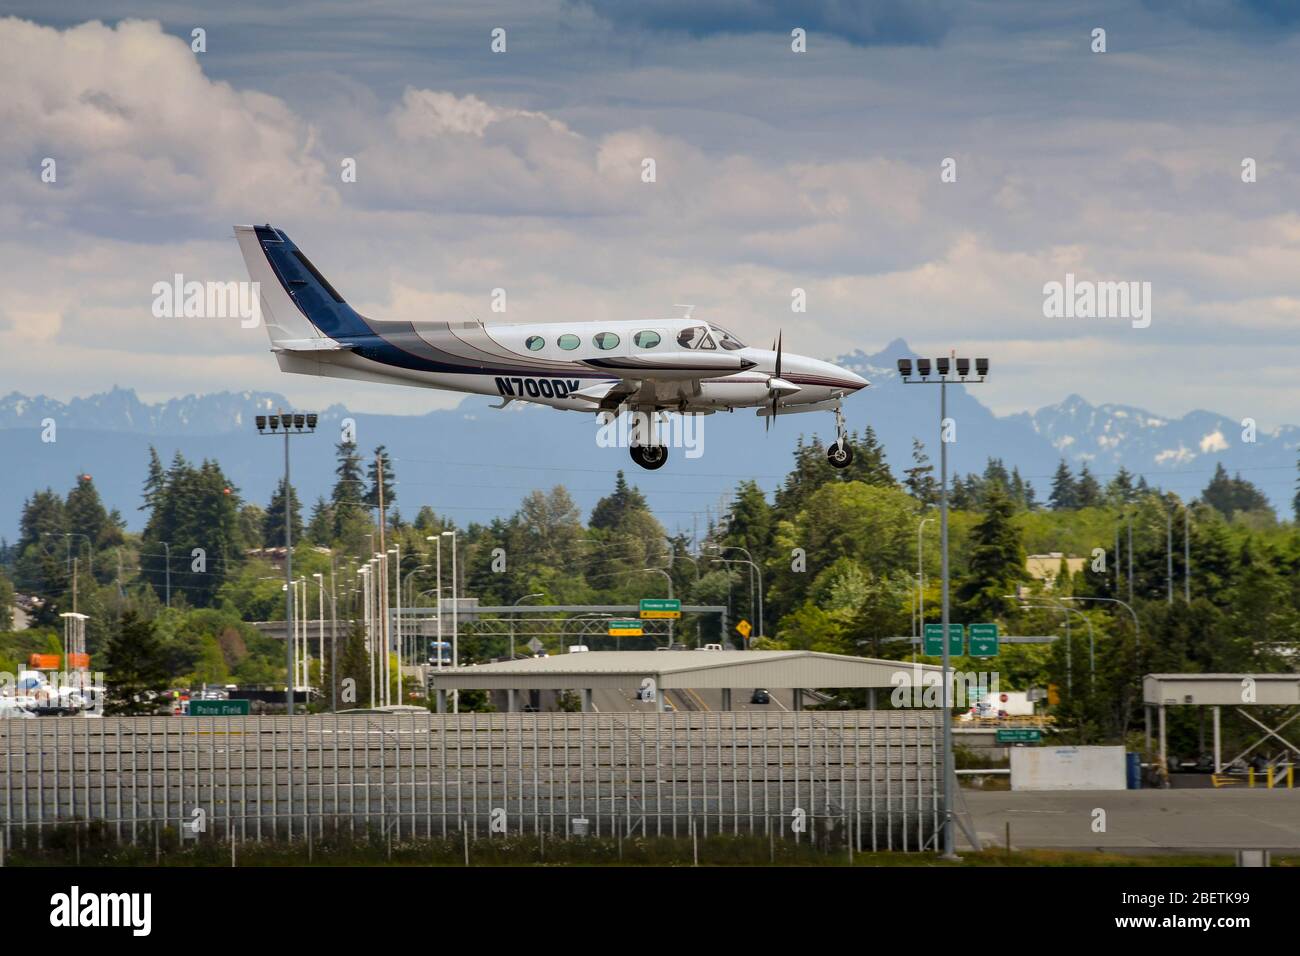 EVERETT, WAS, USA - JUNE 2018: Cessna 340 twin engined light aircraft landing at Everett. Stock Photo